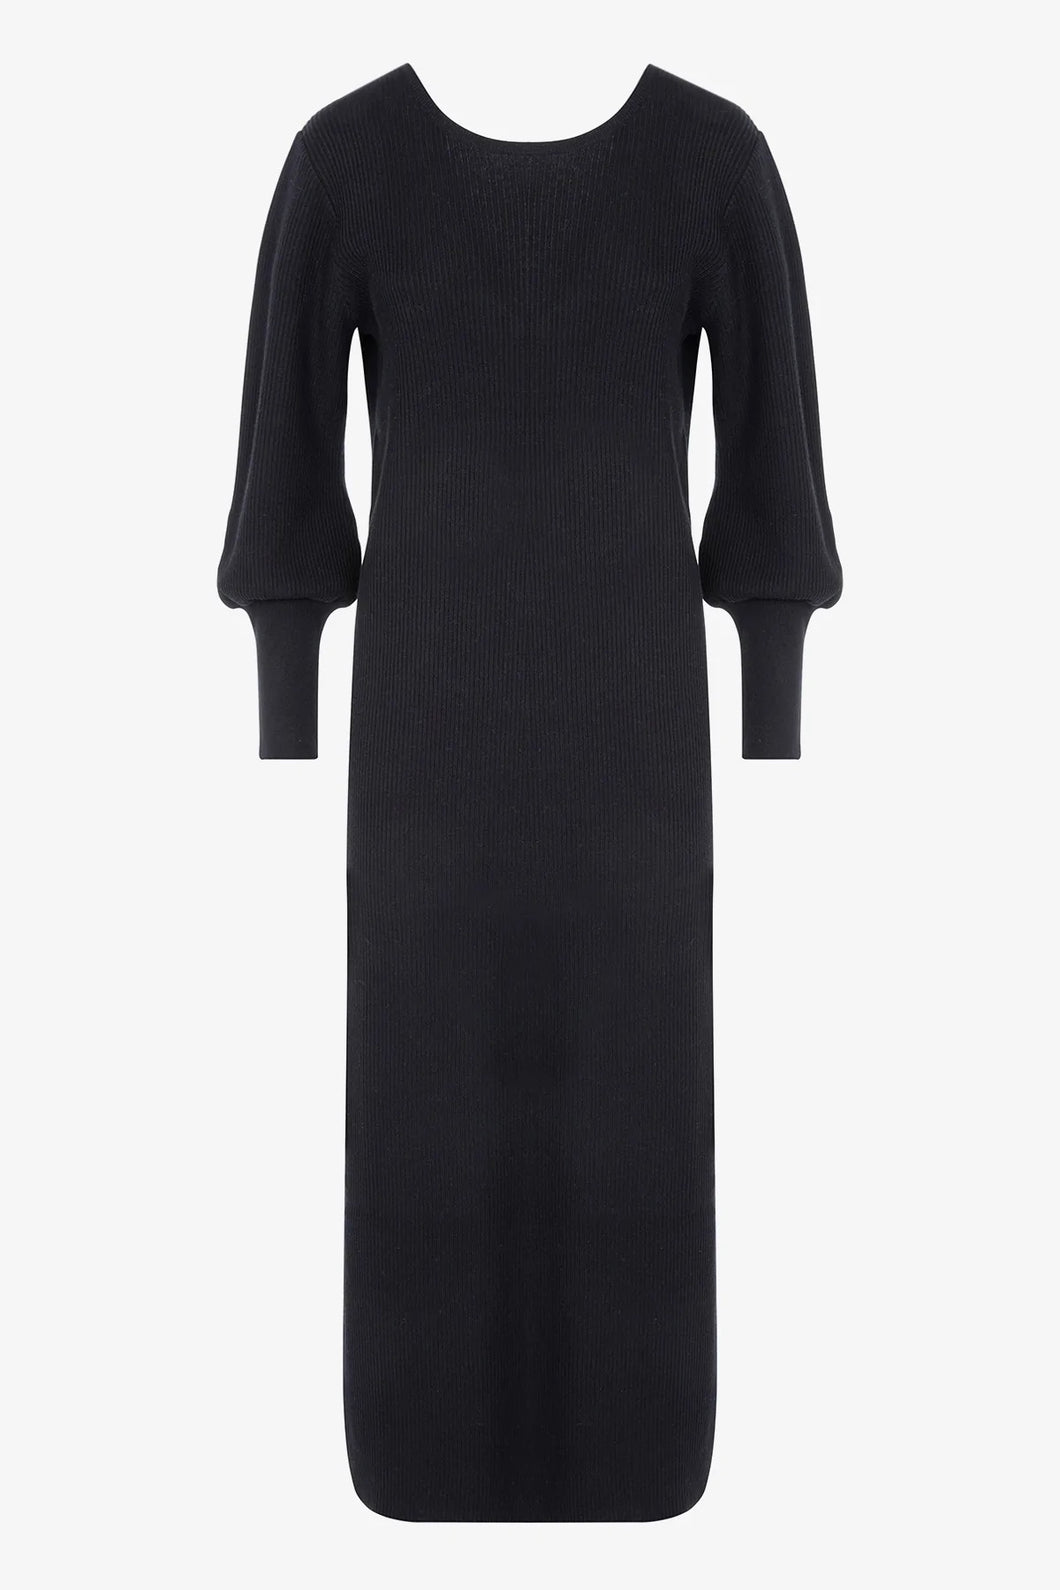 Âme Hariette Black Knitted Dress With V-Back